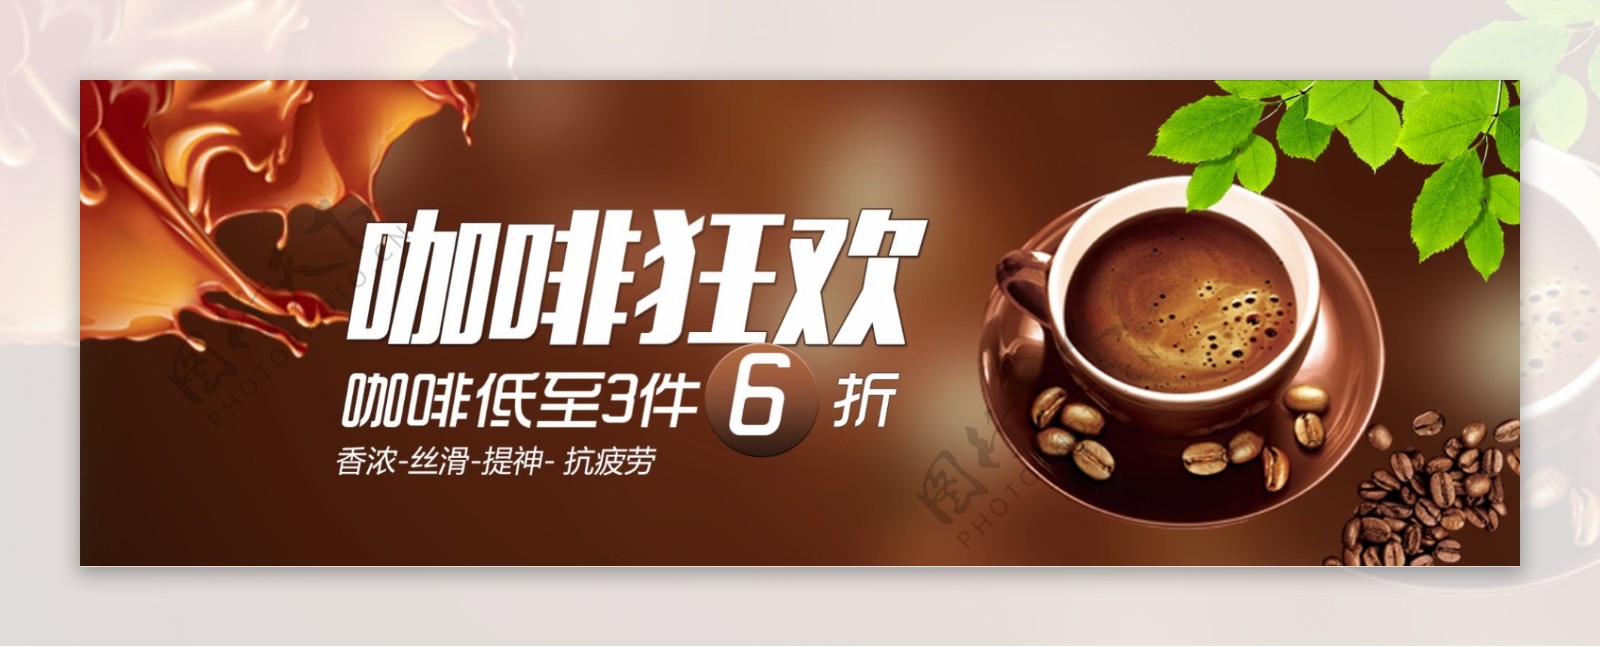 棕色时尚咖啡饮料咖啡节电商banner